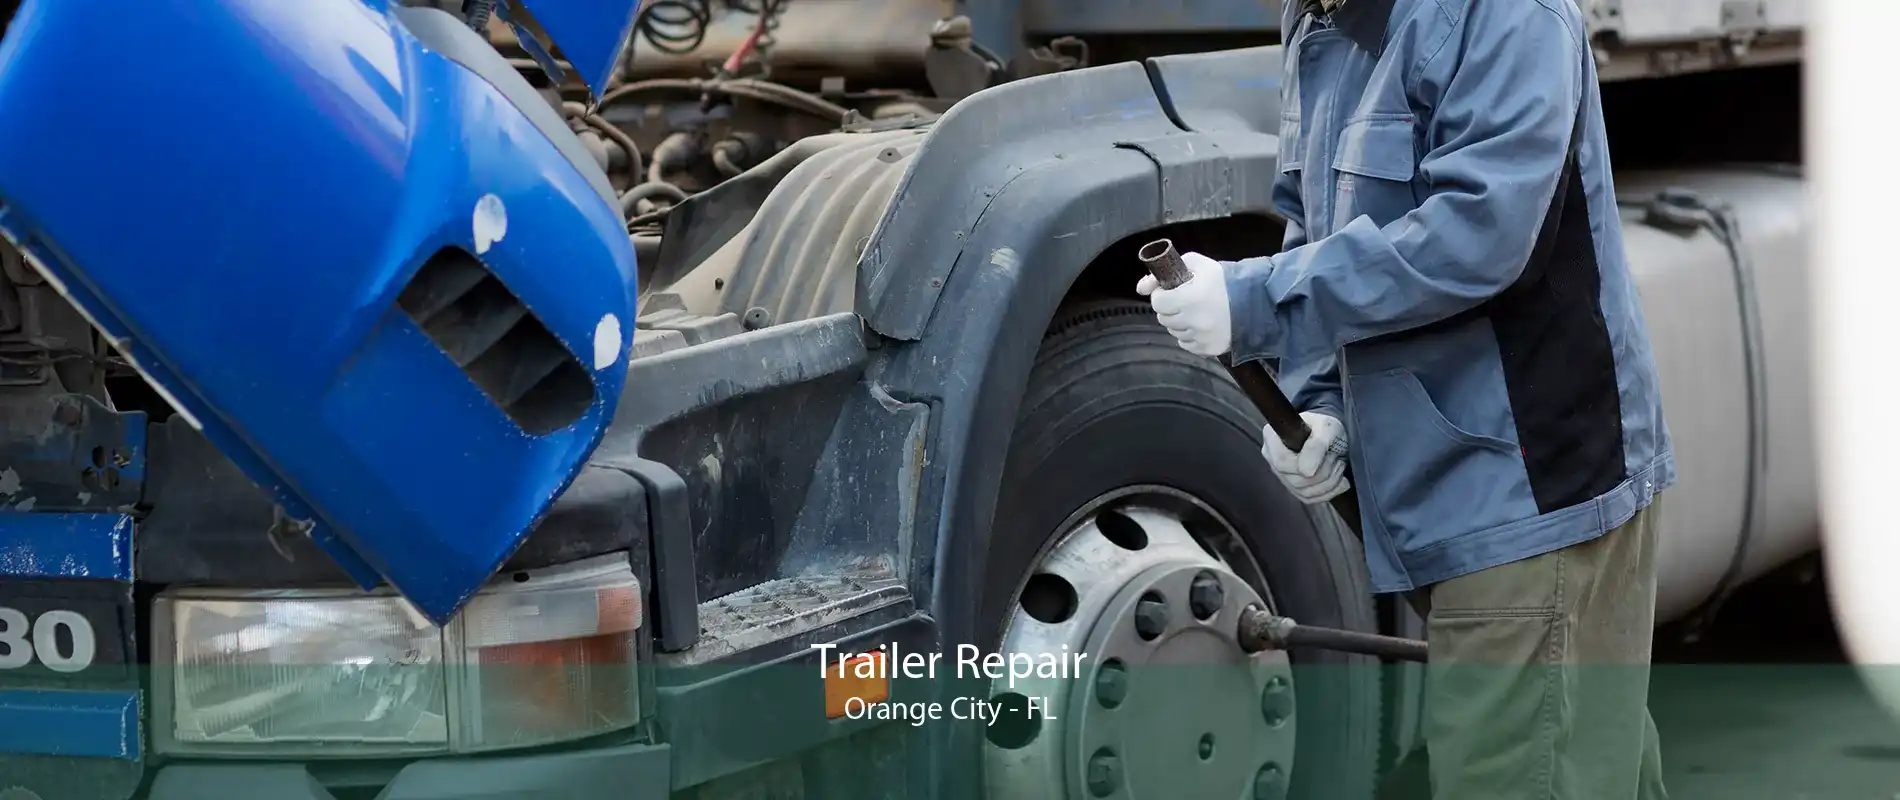 Trailer Repair Orange City - FL